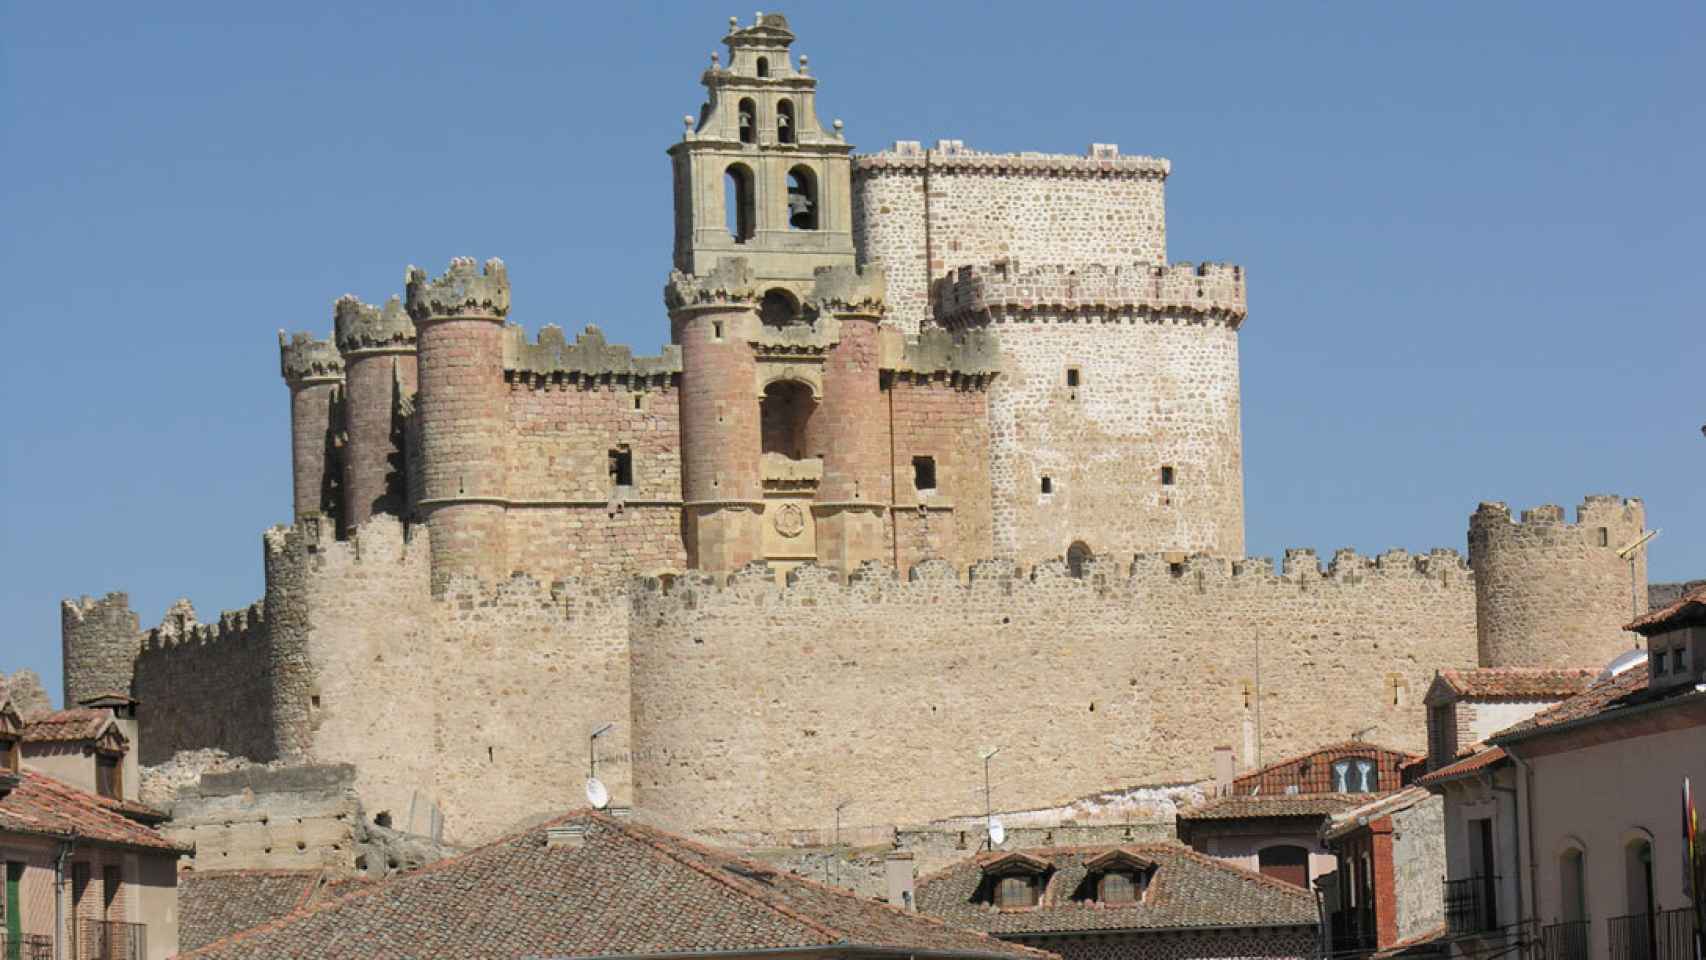 Vista de Turégano (Segovia), con su castillo-iglesia al fondo, donde, en 1483, se celebró uno de los dos sínodos convocados posteriormente por el obispo Juan Arias Dávila